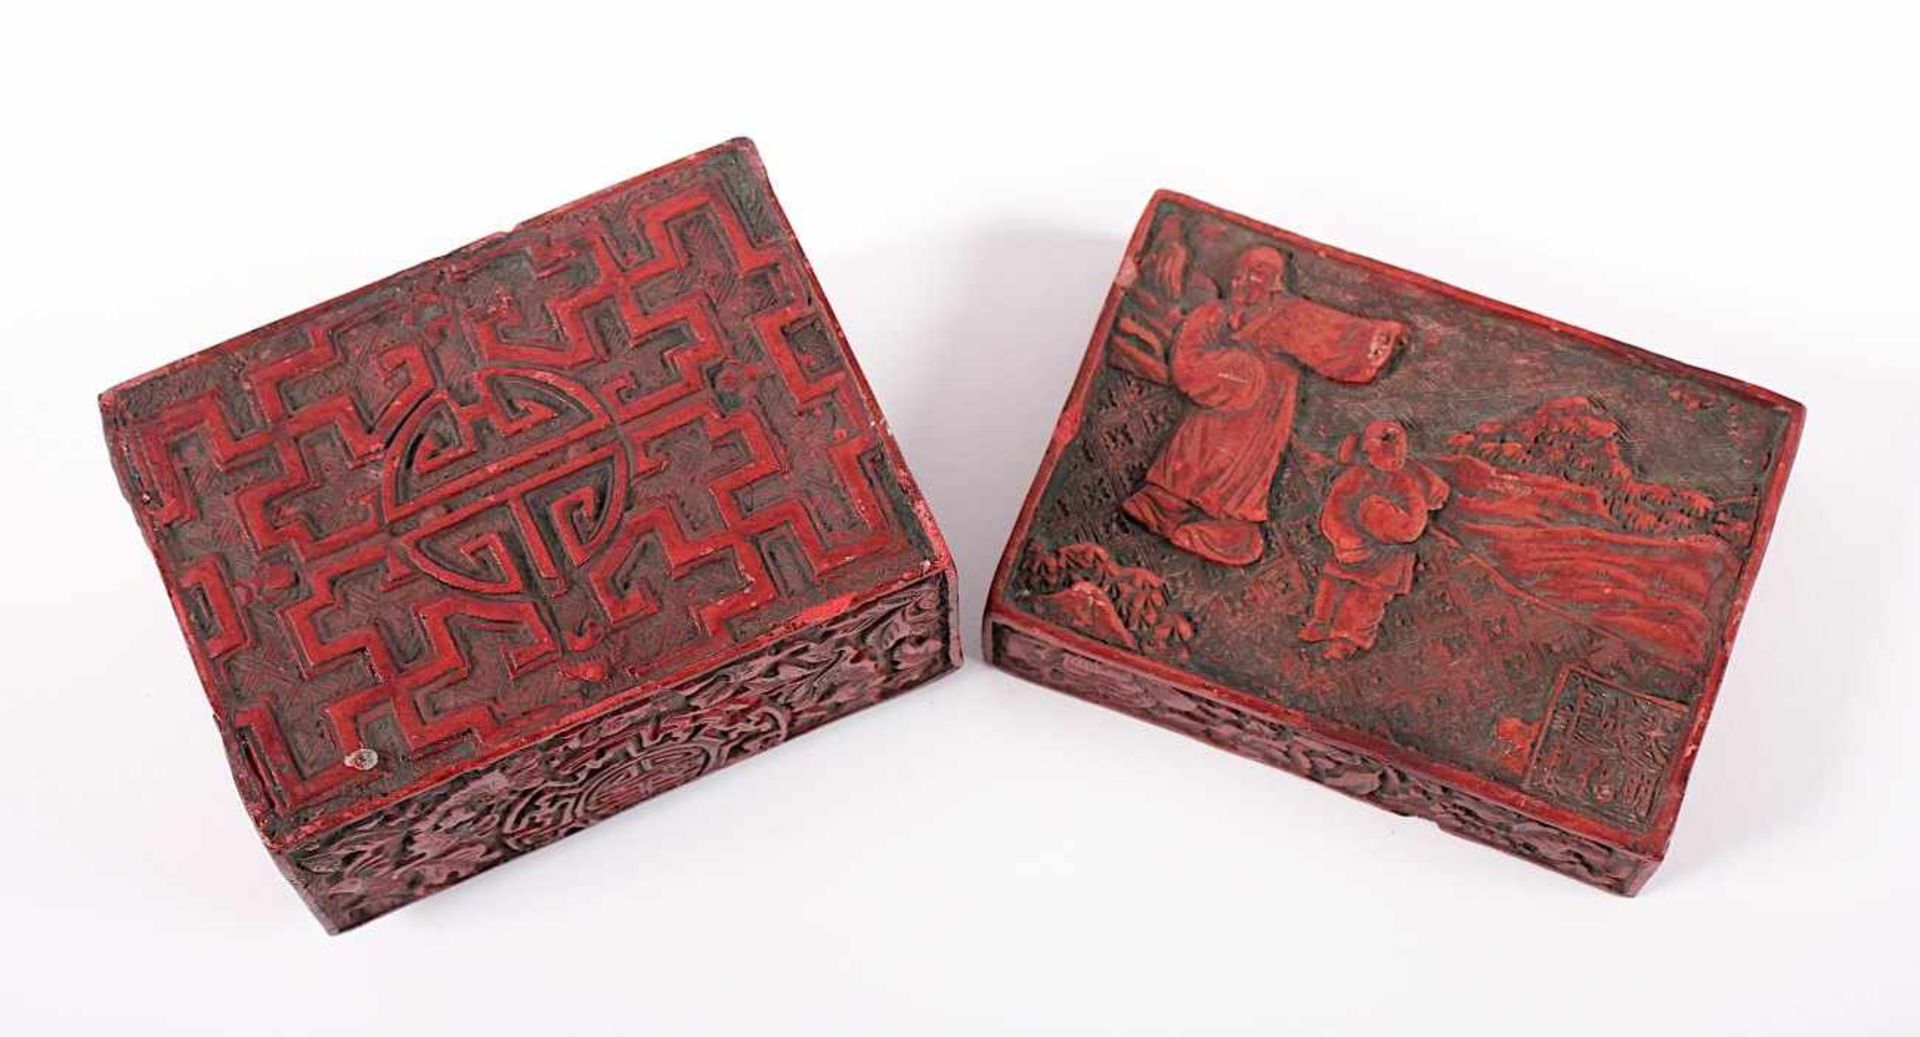 KLEINE SCHATULLE, roter Schnitzlack, allseitig im Relief beschnitzt, H 7, B 10,7, T 7,7, besch., - Image 3 of 3